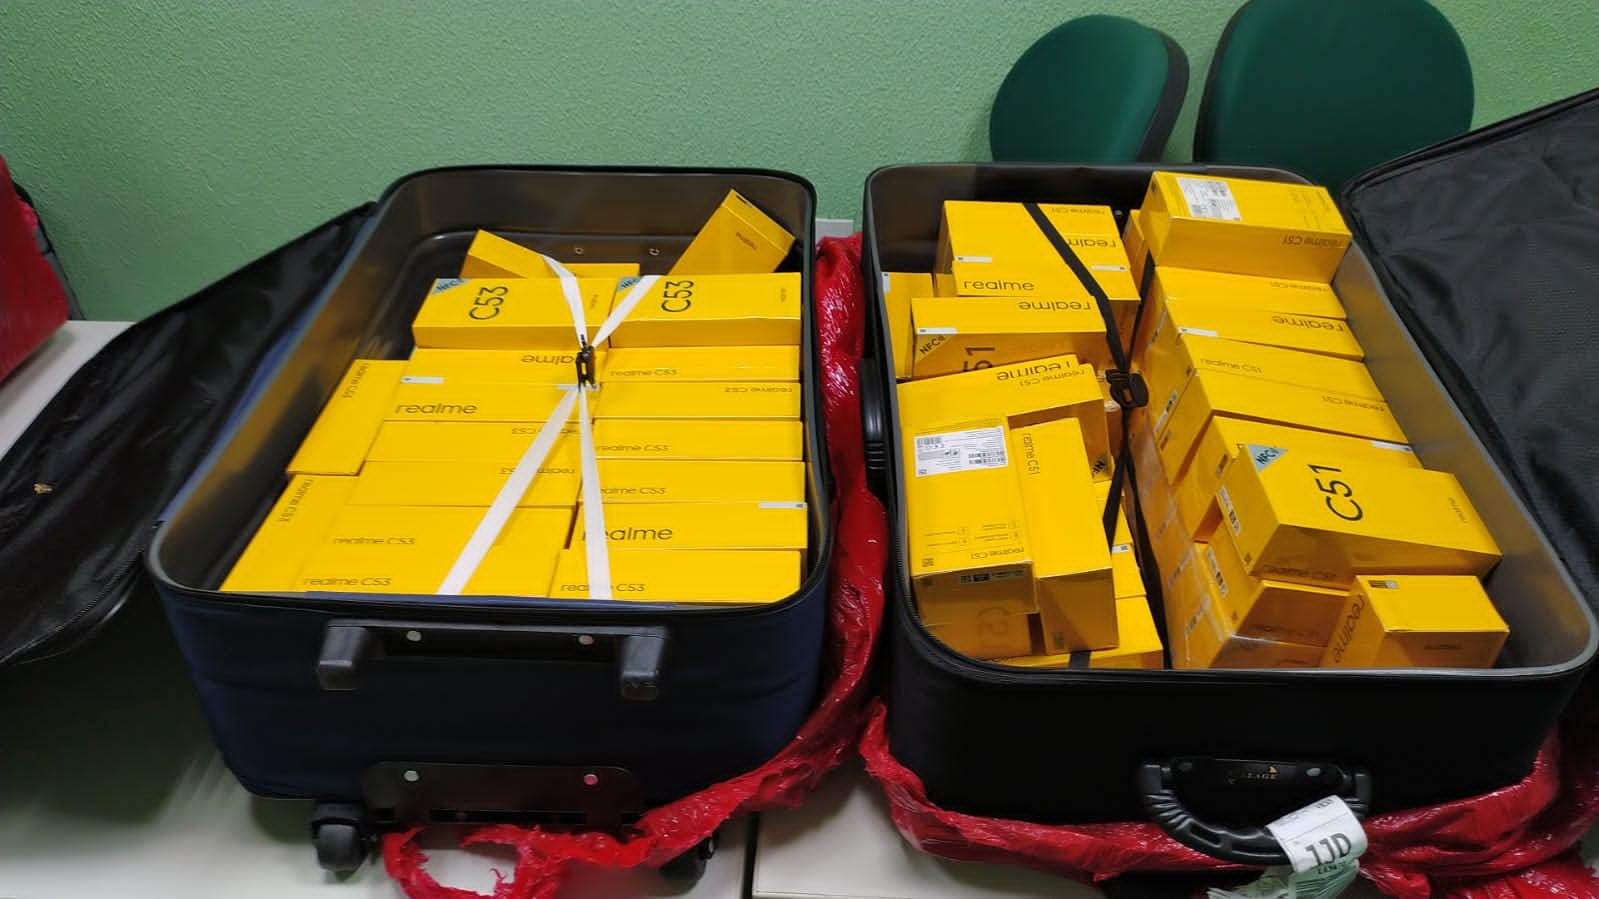 Polícia apreende 170 celulares em bagagem de passageiro que voltava de São Paulo ao interior do Ceará; VÍDEO